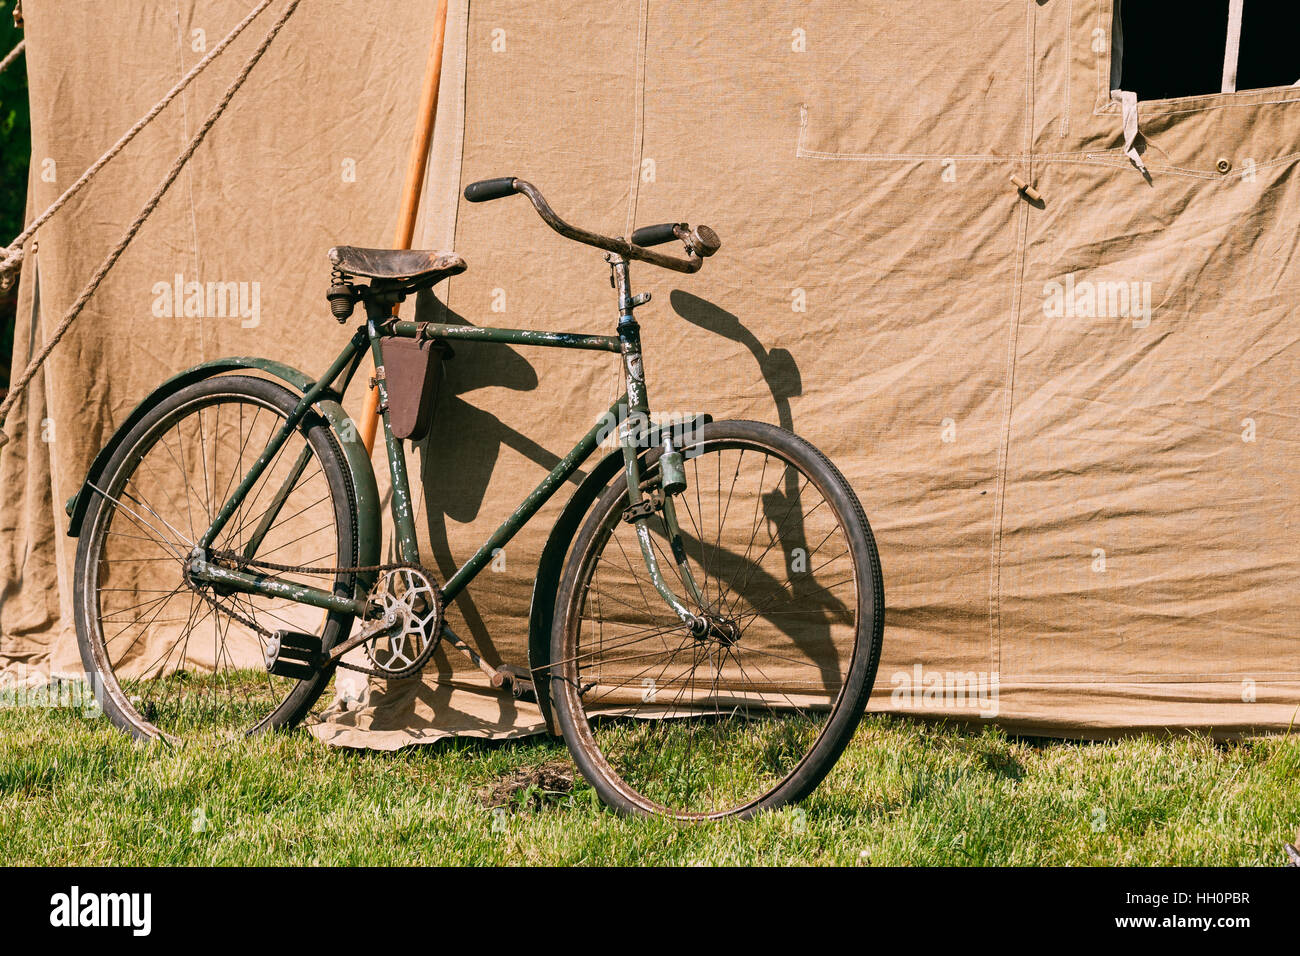 Das alte Rarität Fahrrad parkte neben der großen sowjetischen Militär Canvas Khaki Zelt auf dem grünen Rasen im sonnigen Sommer Wald. Stockfoto